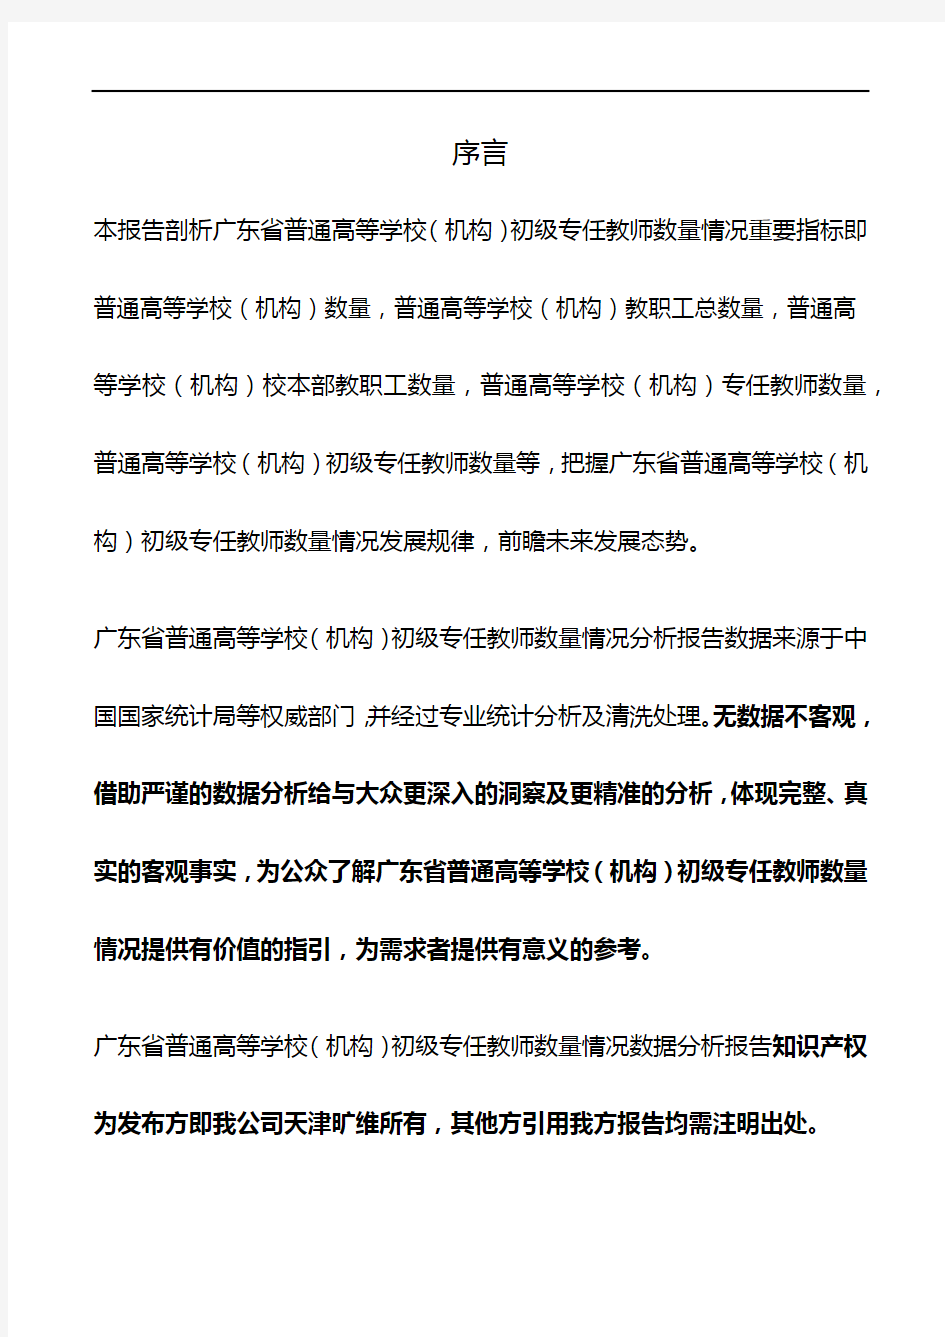 广东省普通高等学校(机构)初级专任教师数量情况3年数据分析报告2019版